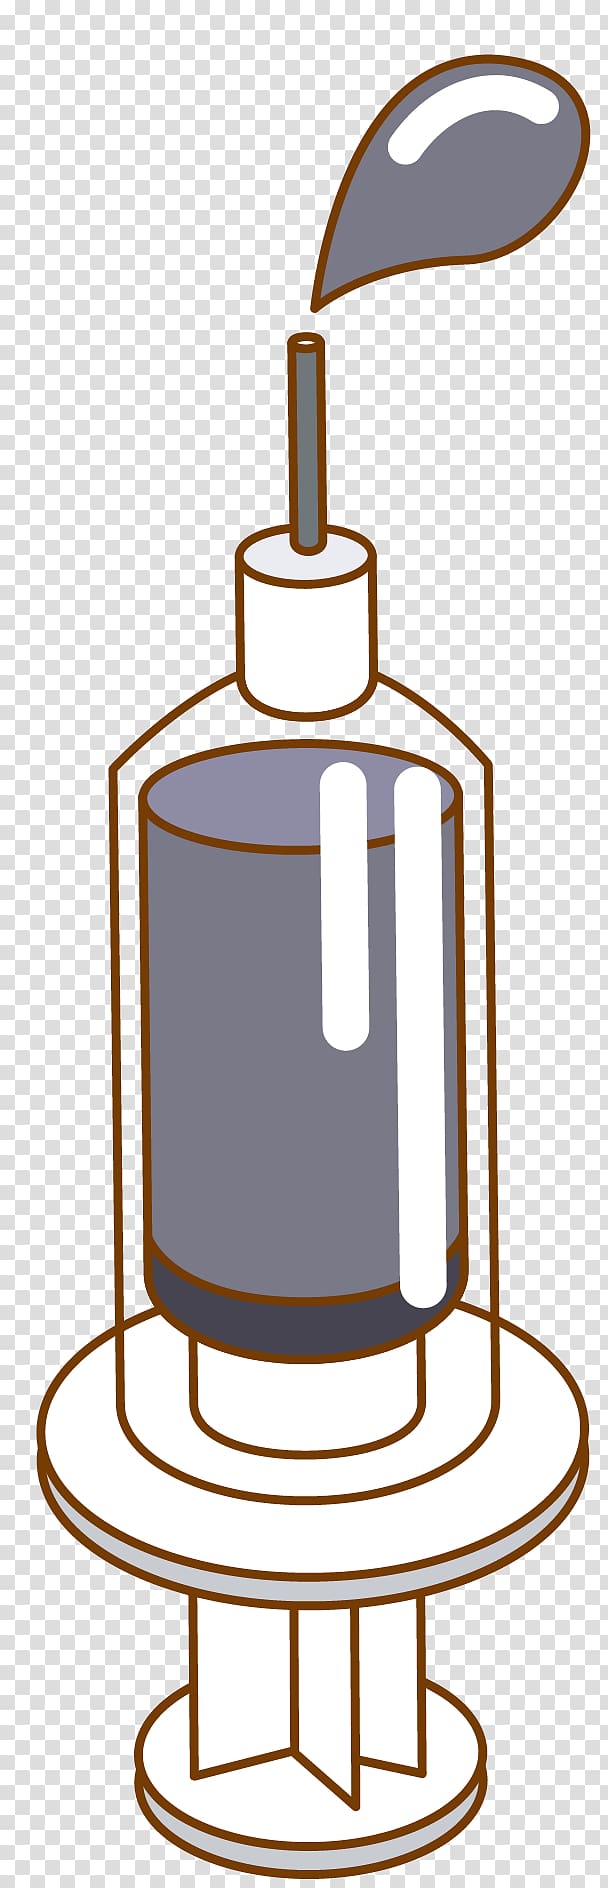 Syringe Cartoon , syringe material transparent background PNG clipart